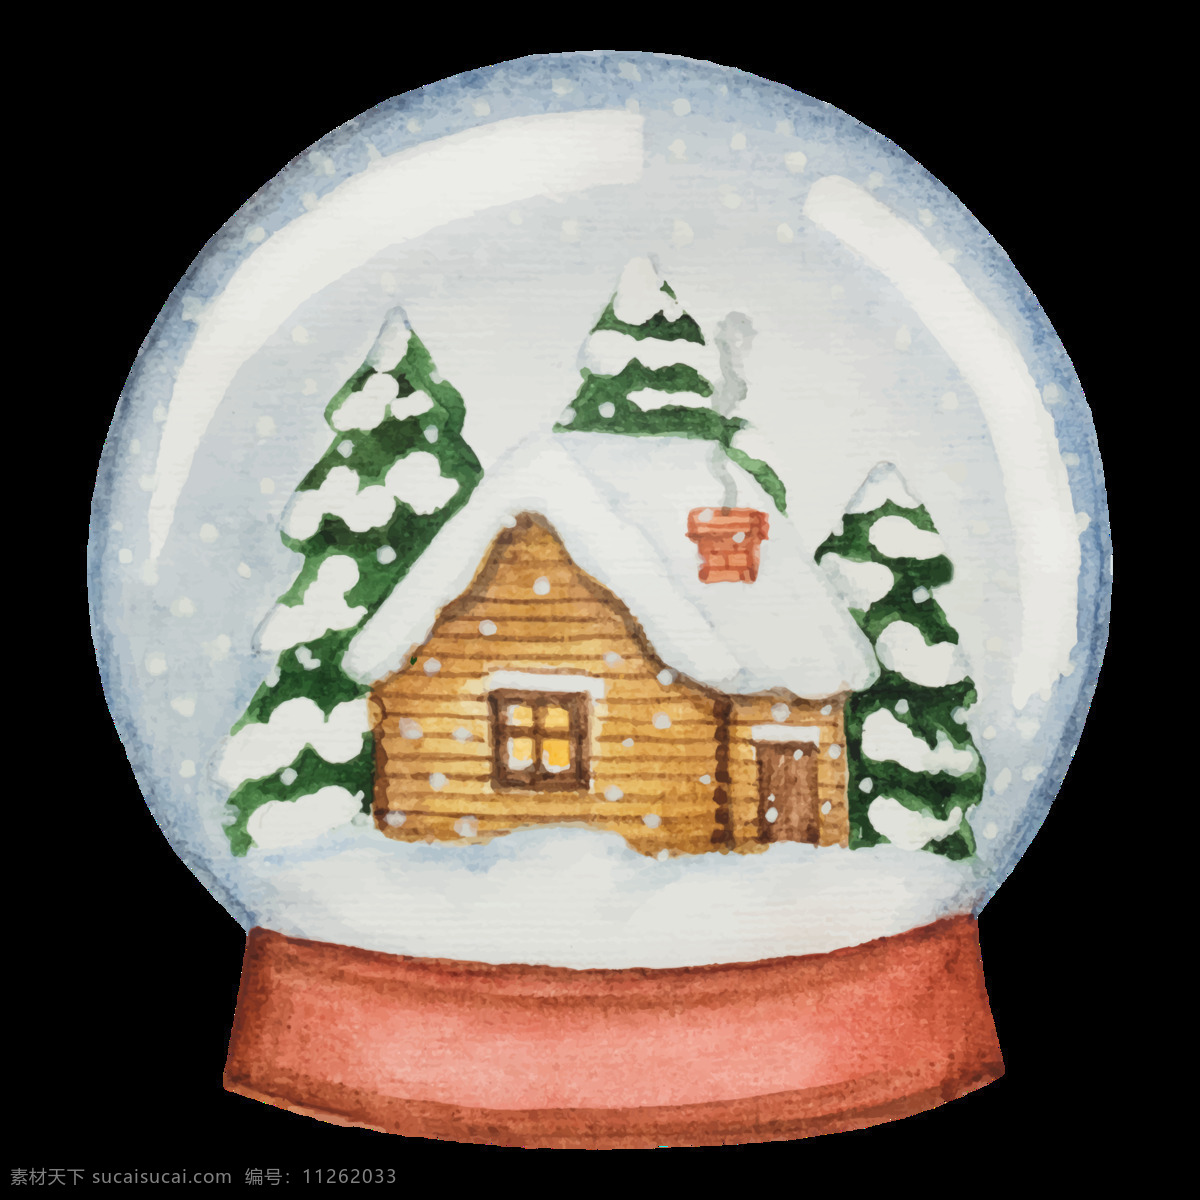 玻璃球 风景 透明 玻璃 冬季 卡通 抠图专用 装饰 设计素材